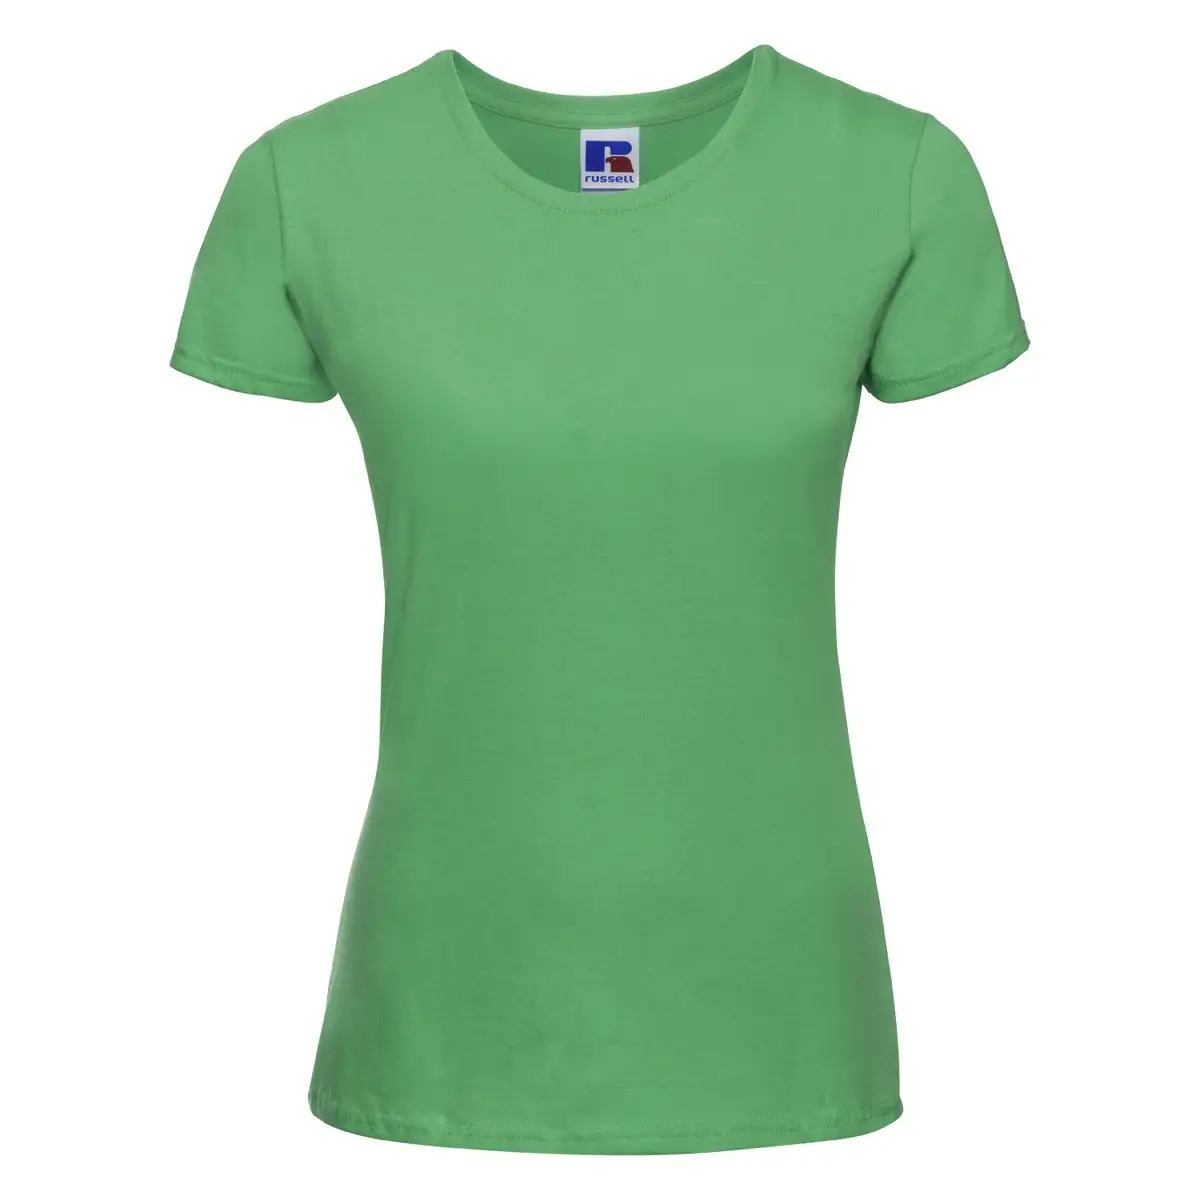 T-Shirt Manica Corta Donna Cotone Personalizzata - Russell Europe